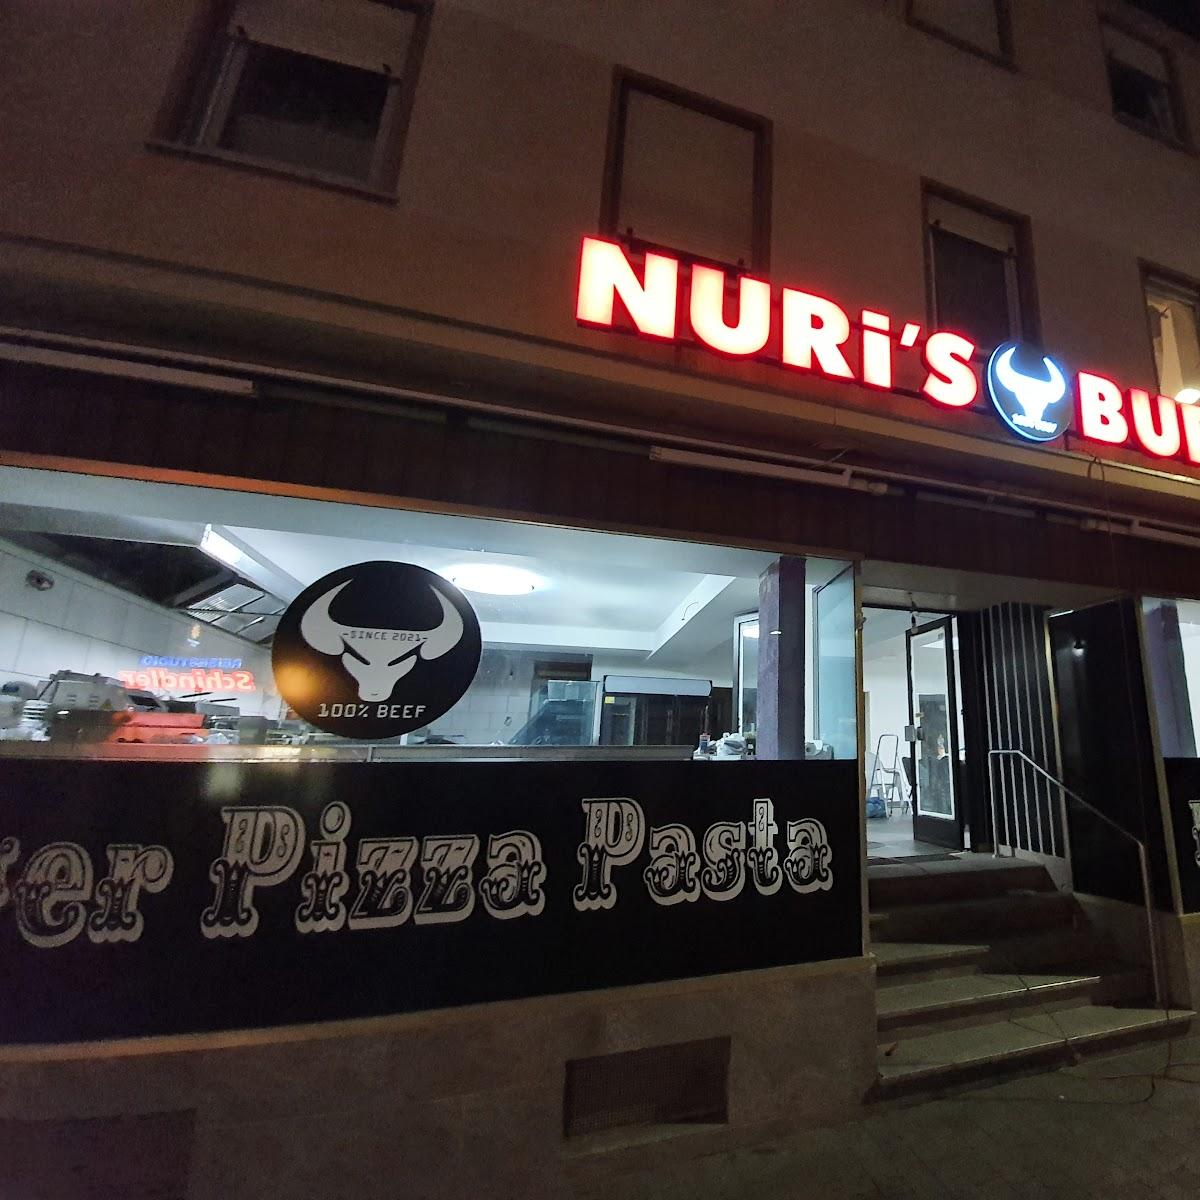 Restaurant "Nuri